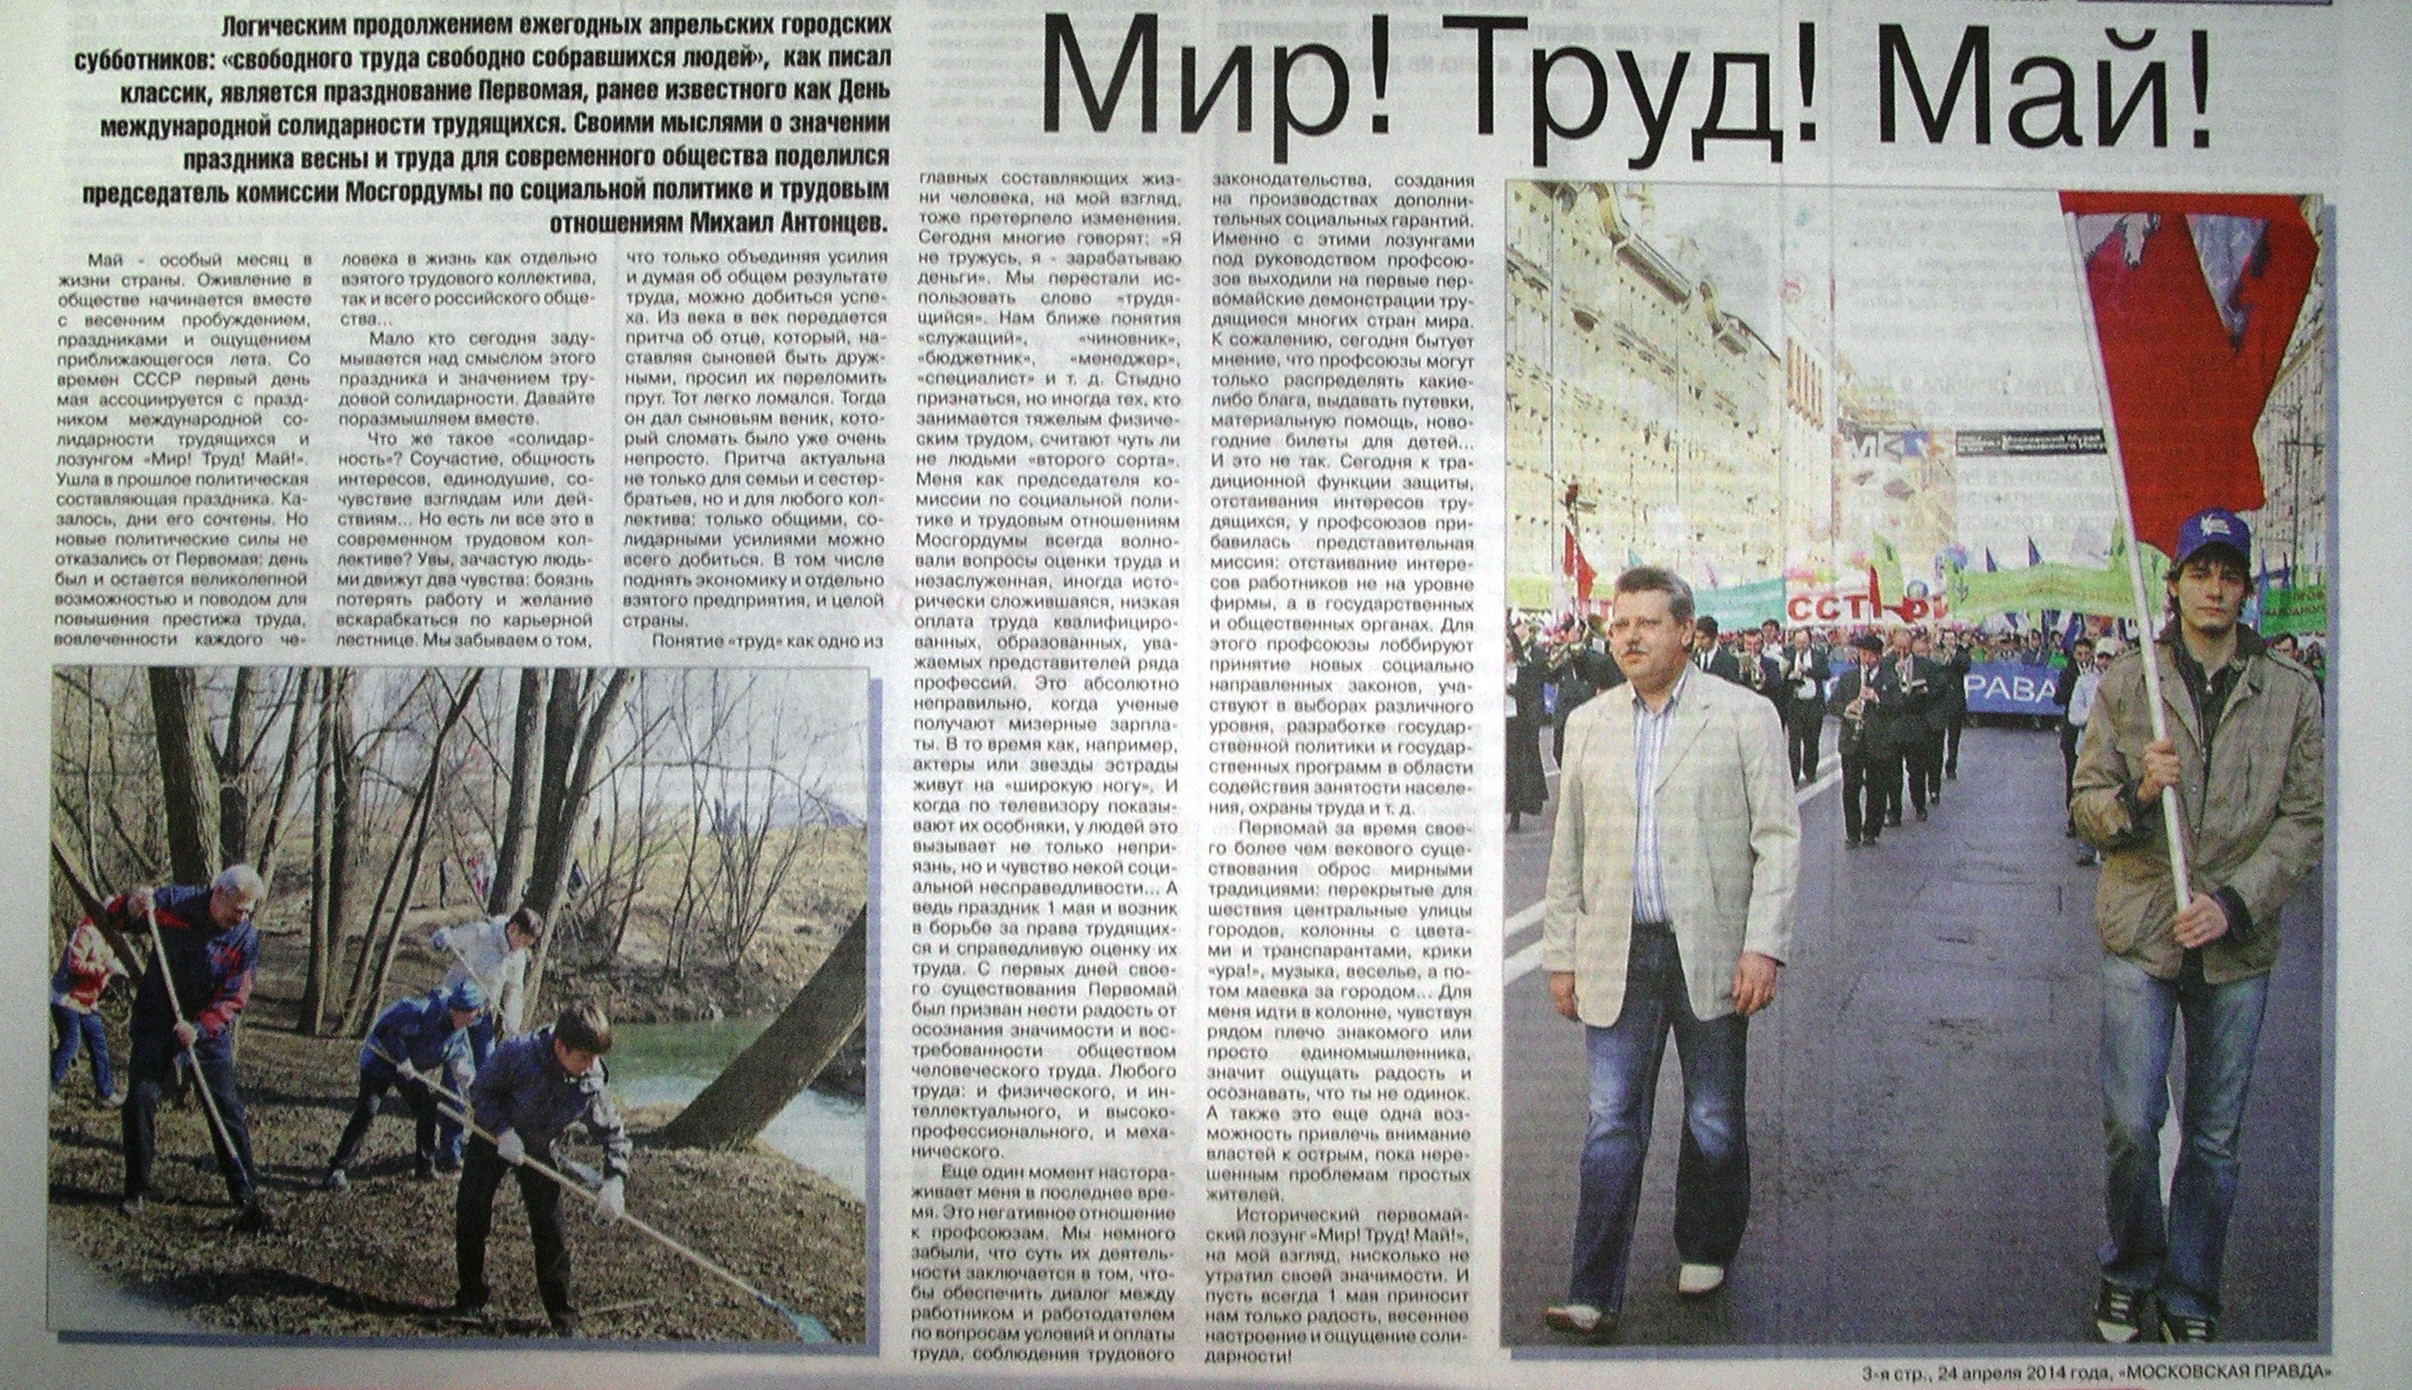 «Мир! Труд! Май!» Газета «Московское собрание» № 7 (196) от 24 апреля 2014 года